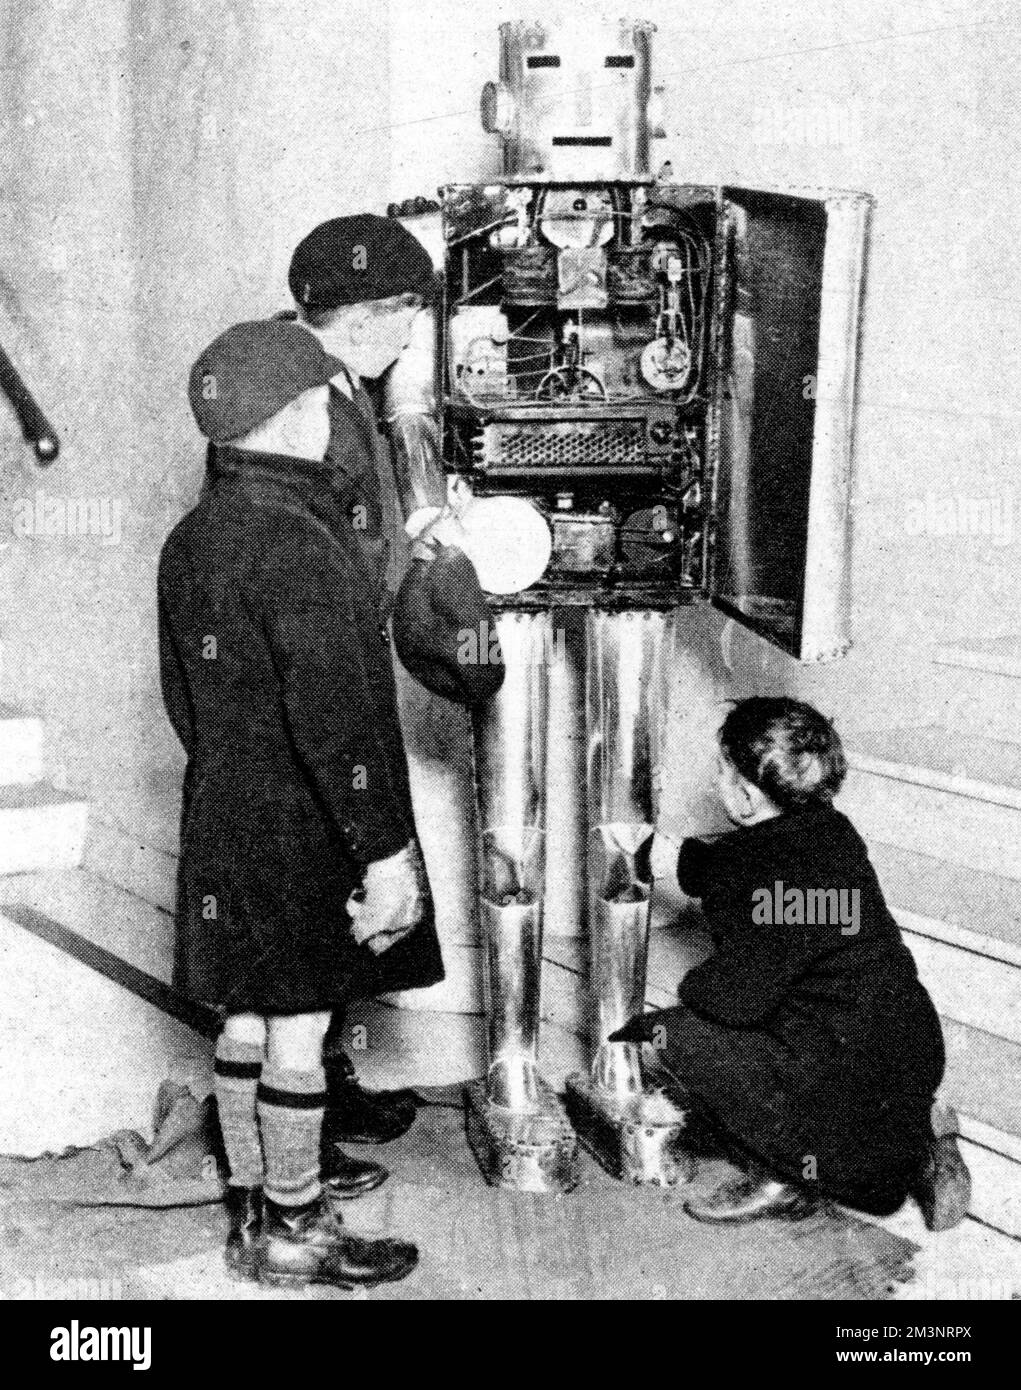 Un robot fisiologico alla mostra degli studenti a Londra, 1929. Progettato per mostrare come funzionano gli organi del corpo, qui tre giovani visitatori prendono grande interesse per i suoi interni. Data: 1929 Foto Stock